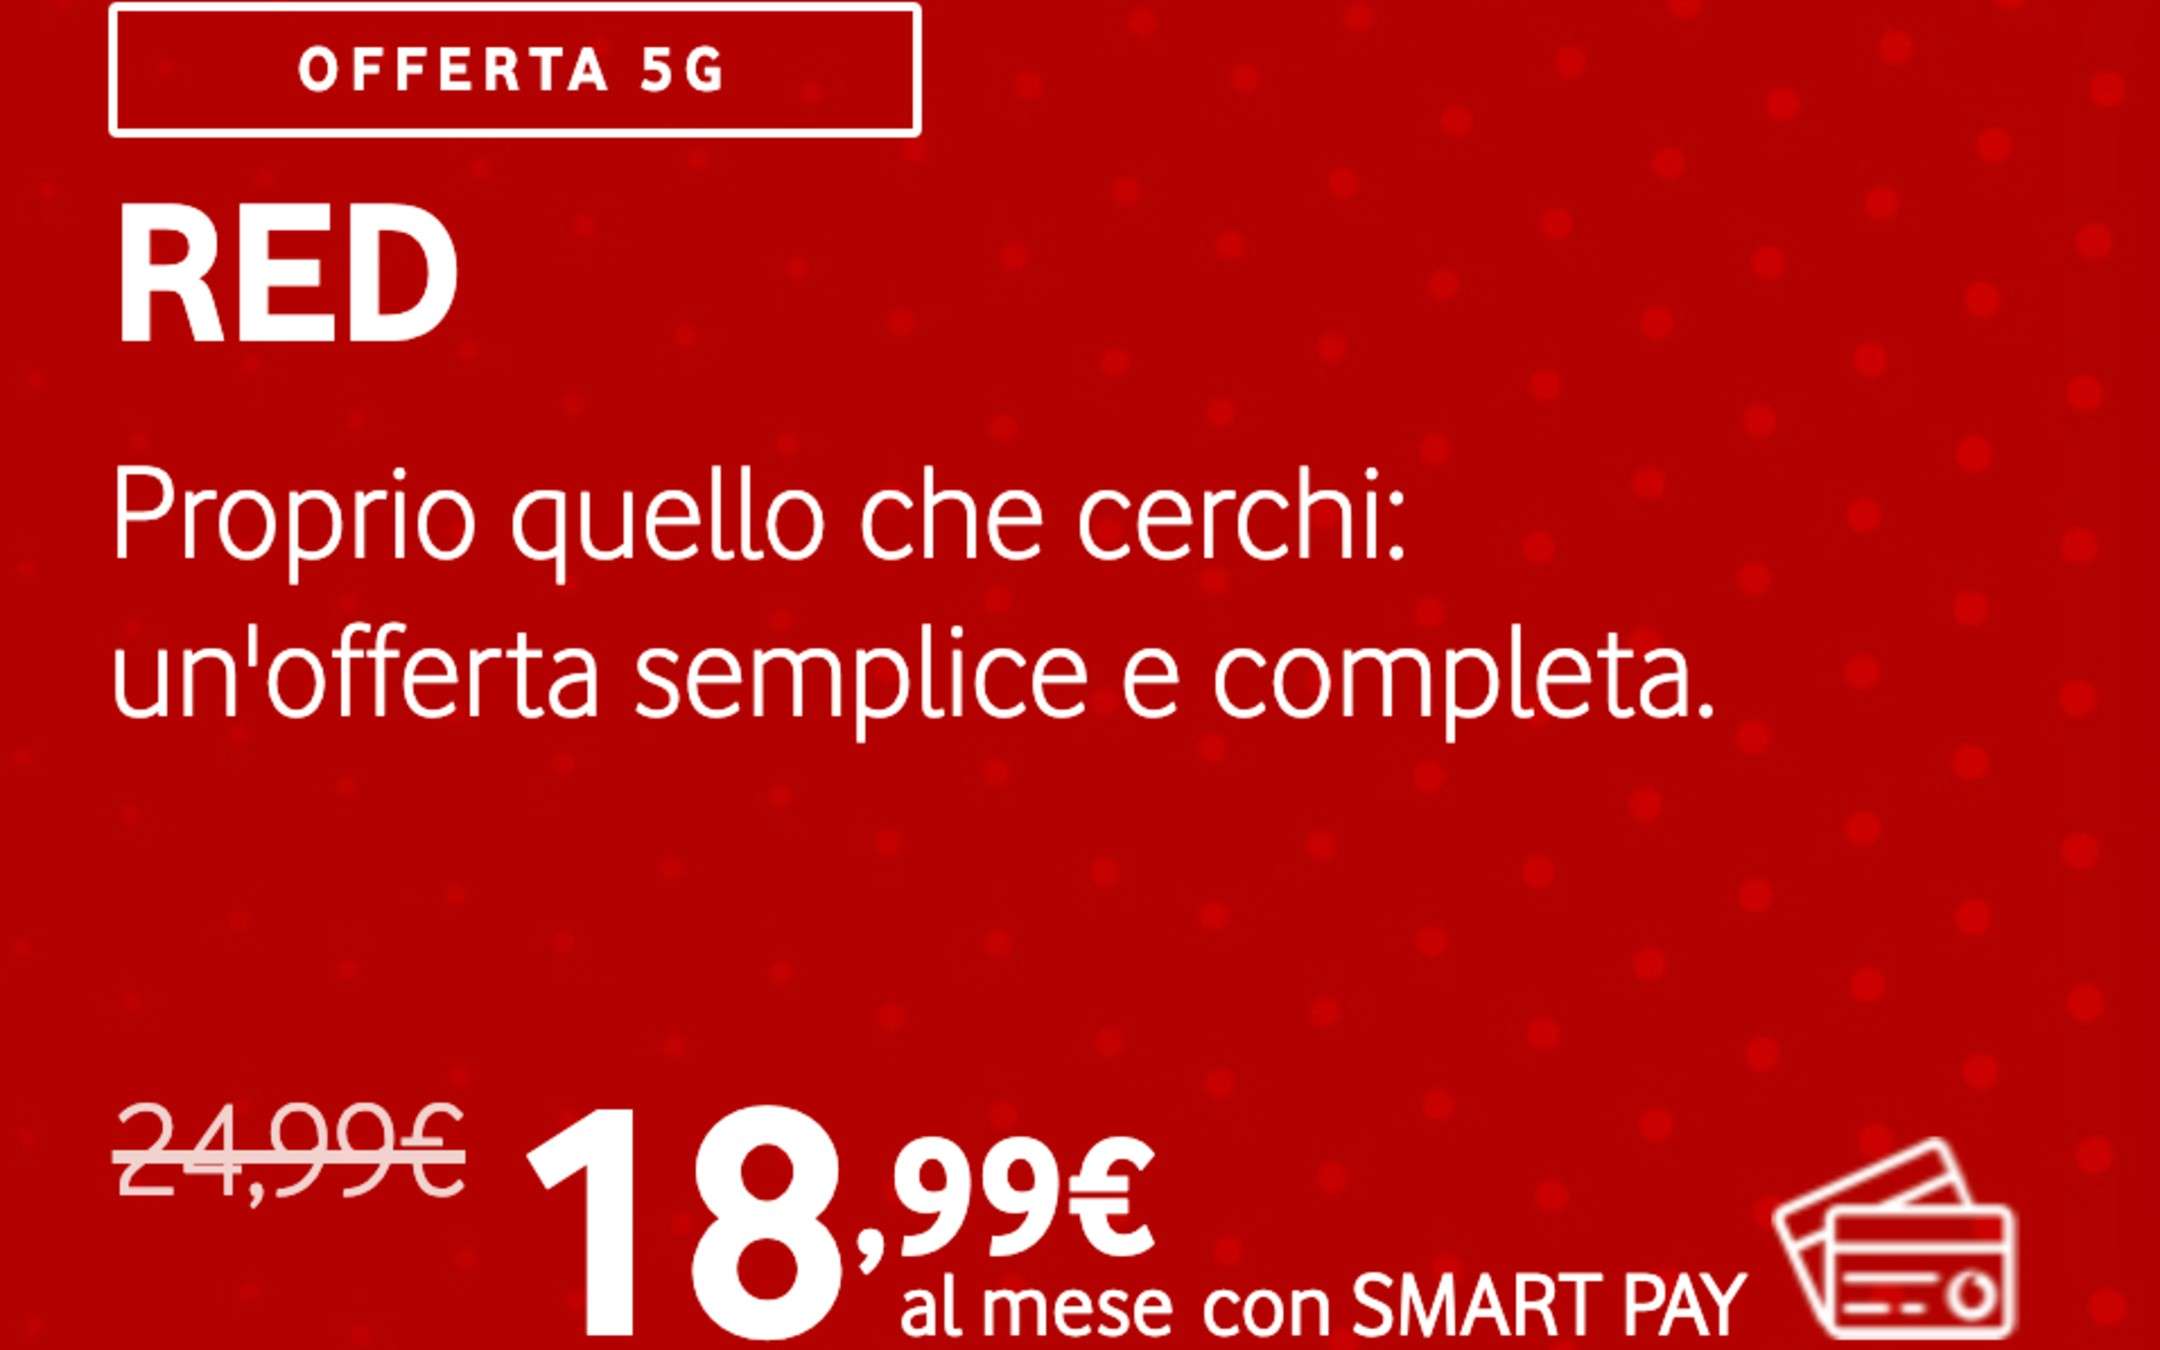 Promo Vodafone RED: ora con 50GB a 18,99€ al mese